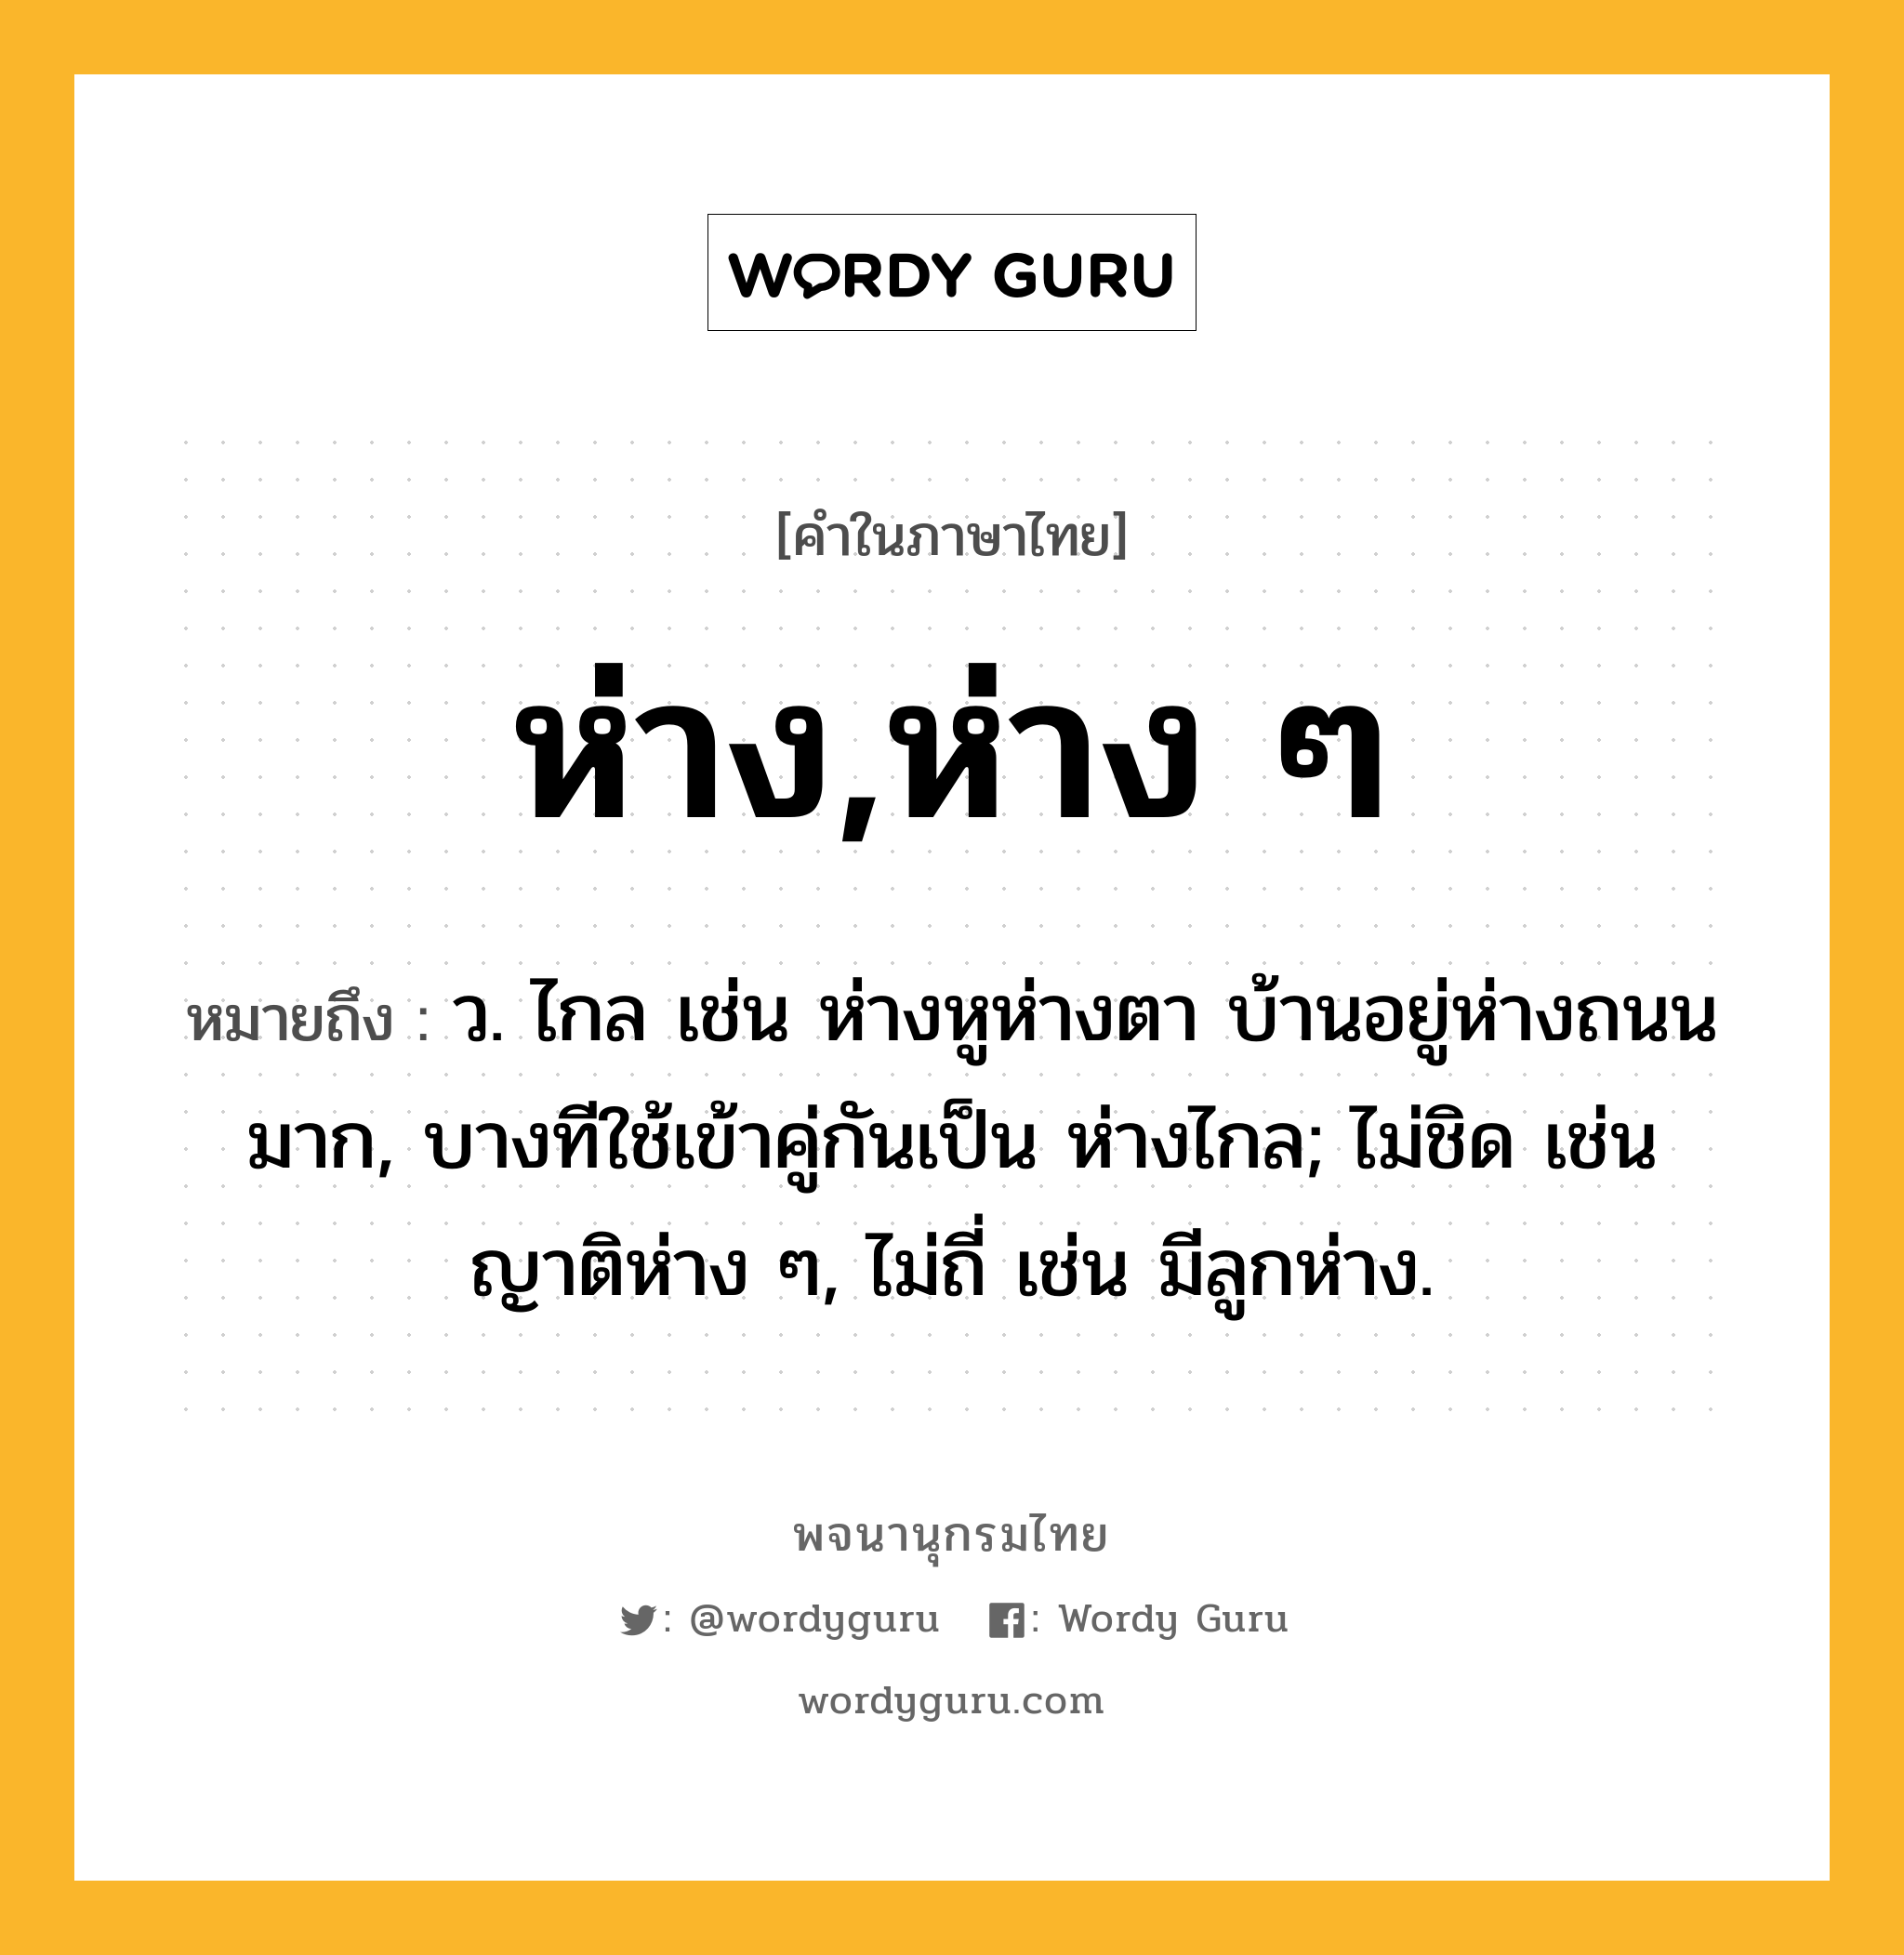 ห่าง,ห่าง ๆ ความหมาย หมายถึงอะไร?, คำในภาษาไทย ห่าง,ห่าง ๆ หมายถึง ว. ไกล เช่น ห่างหูห่างตา บ้านอยู่ห่างถนนมาก, บางทีใช้เข้าคู่กันเป็น ห่างไกล; ไม่ชิด เช่น ญาติห่าง ๆ, ไม่ถี่ เช่น มีลูกห่าง.